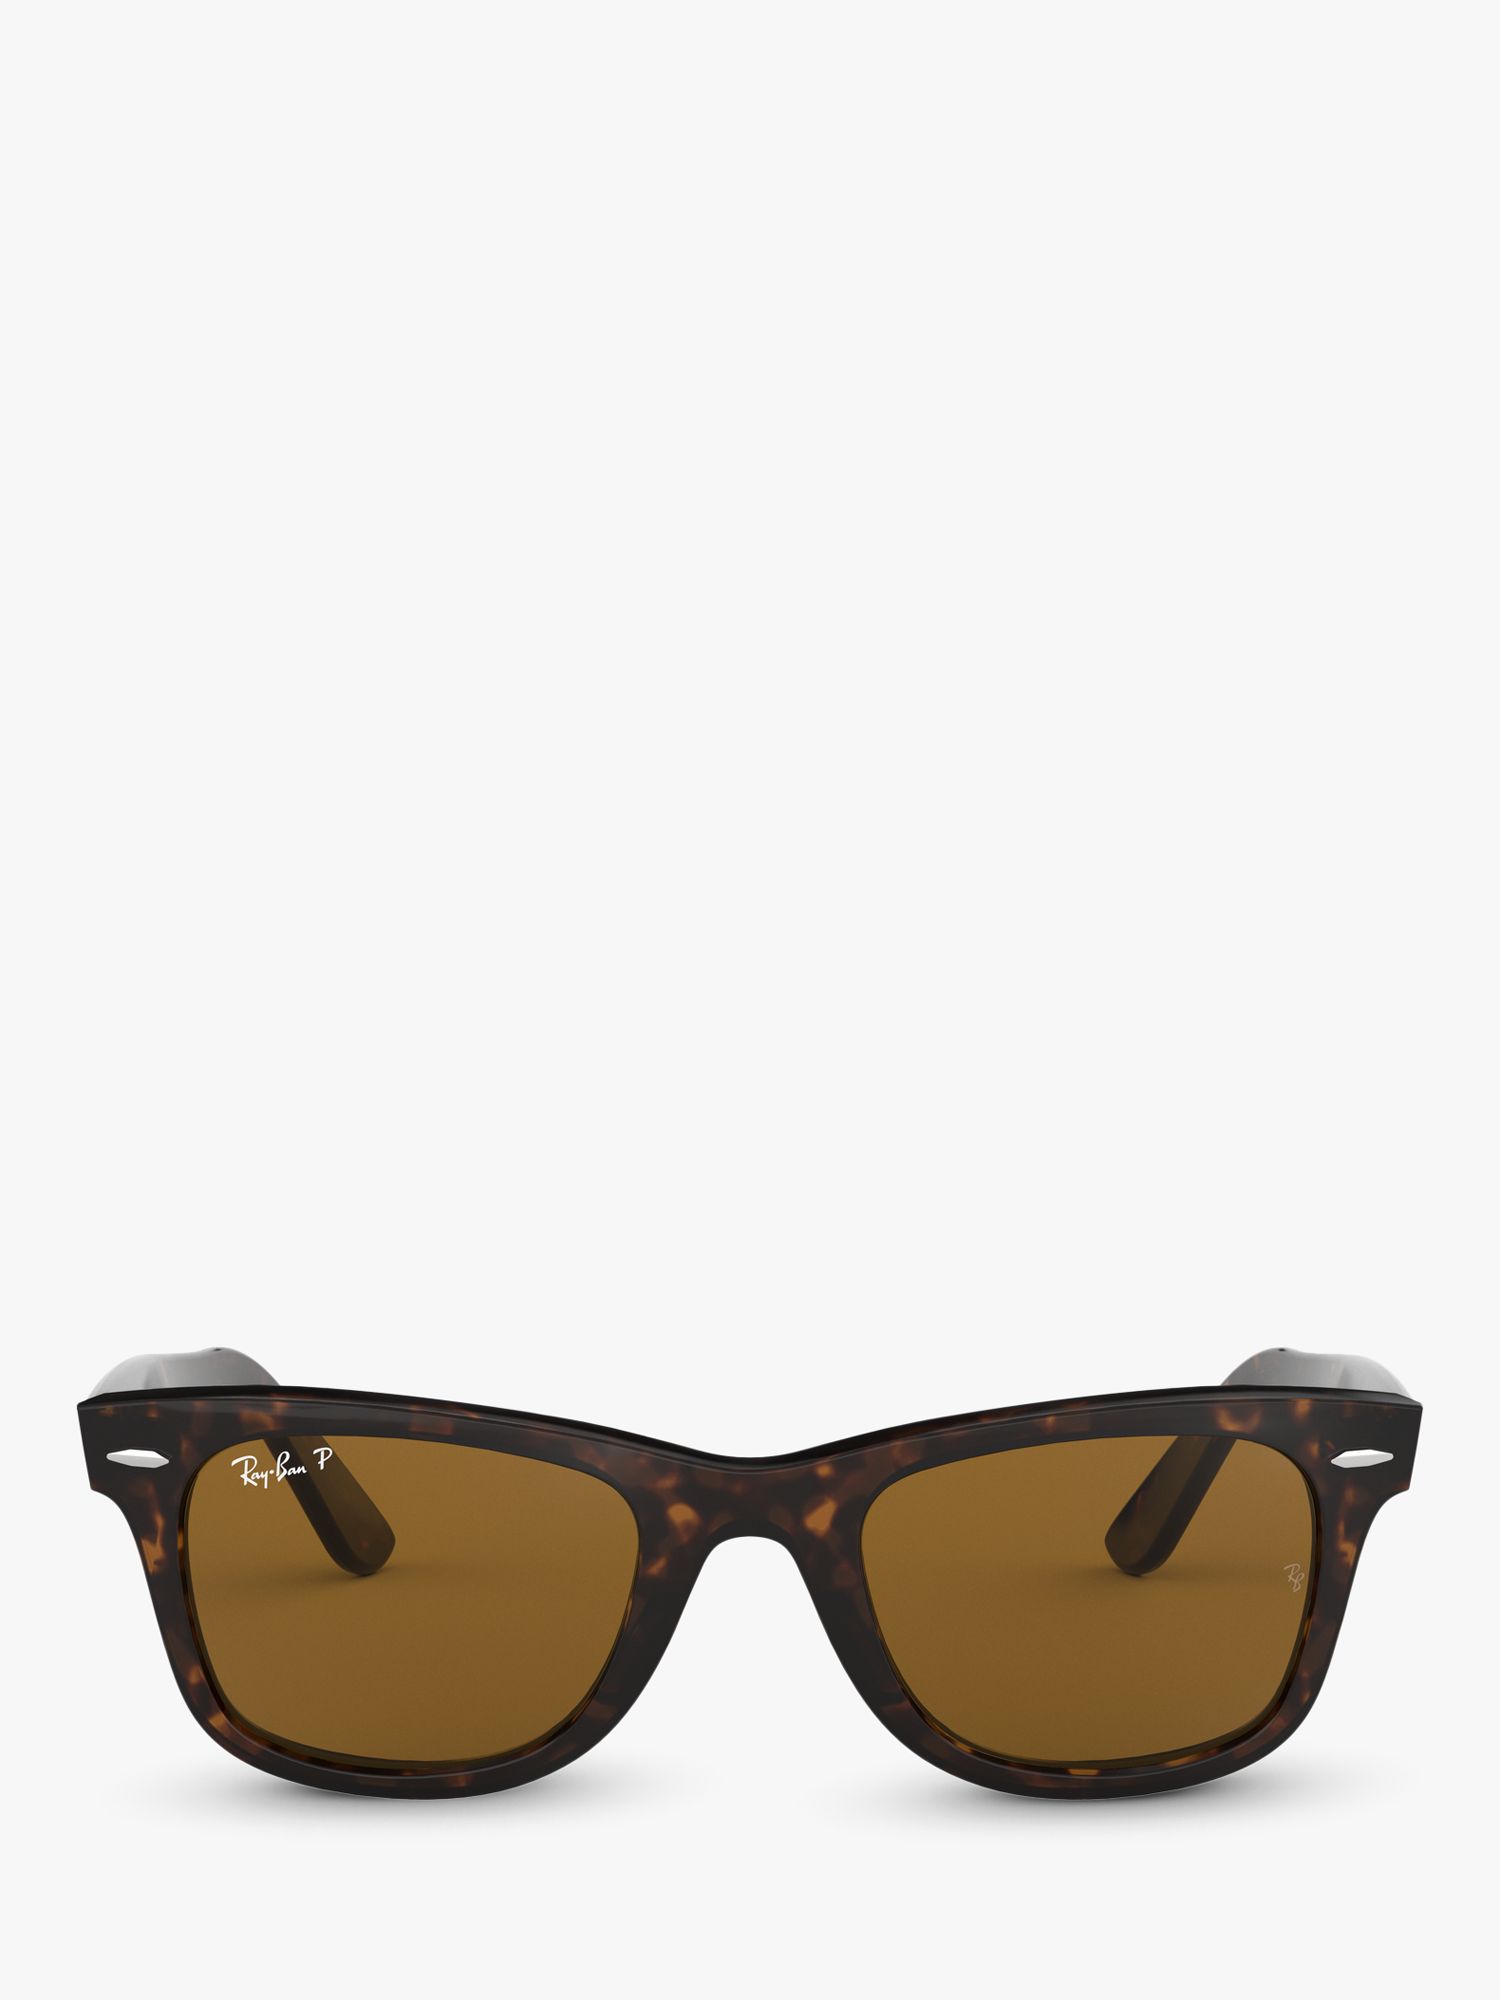 Оригинальные поляризационные солнцезащитные очки Ray-Ban 0RB2140 Wayfarer, черепаховый цвет